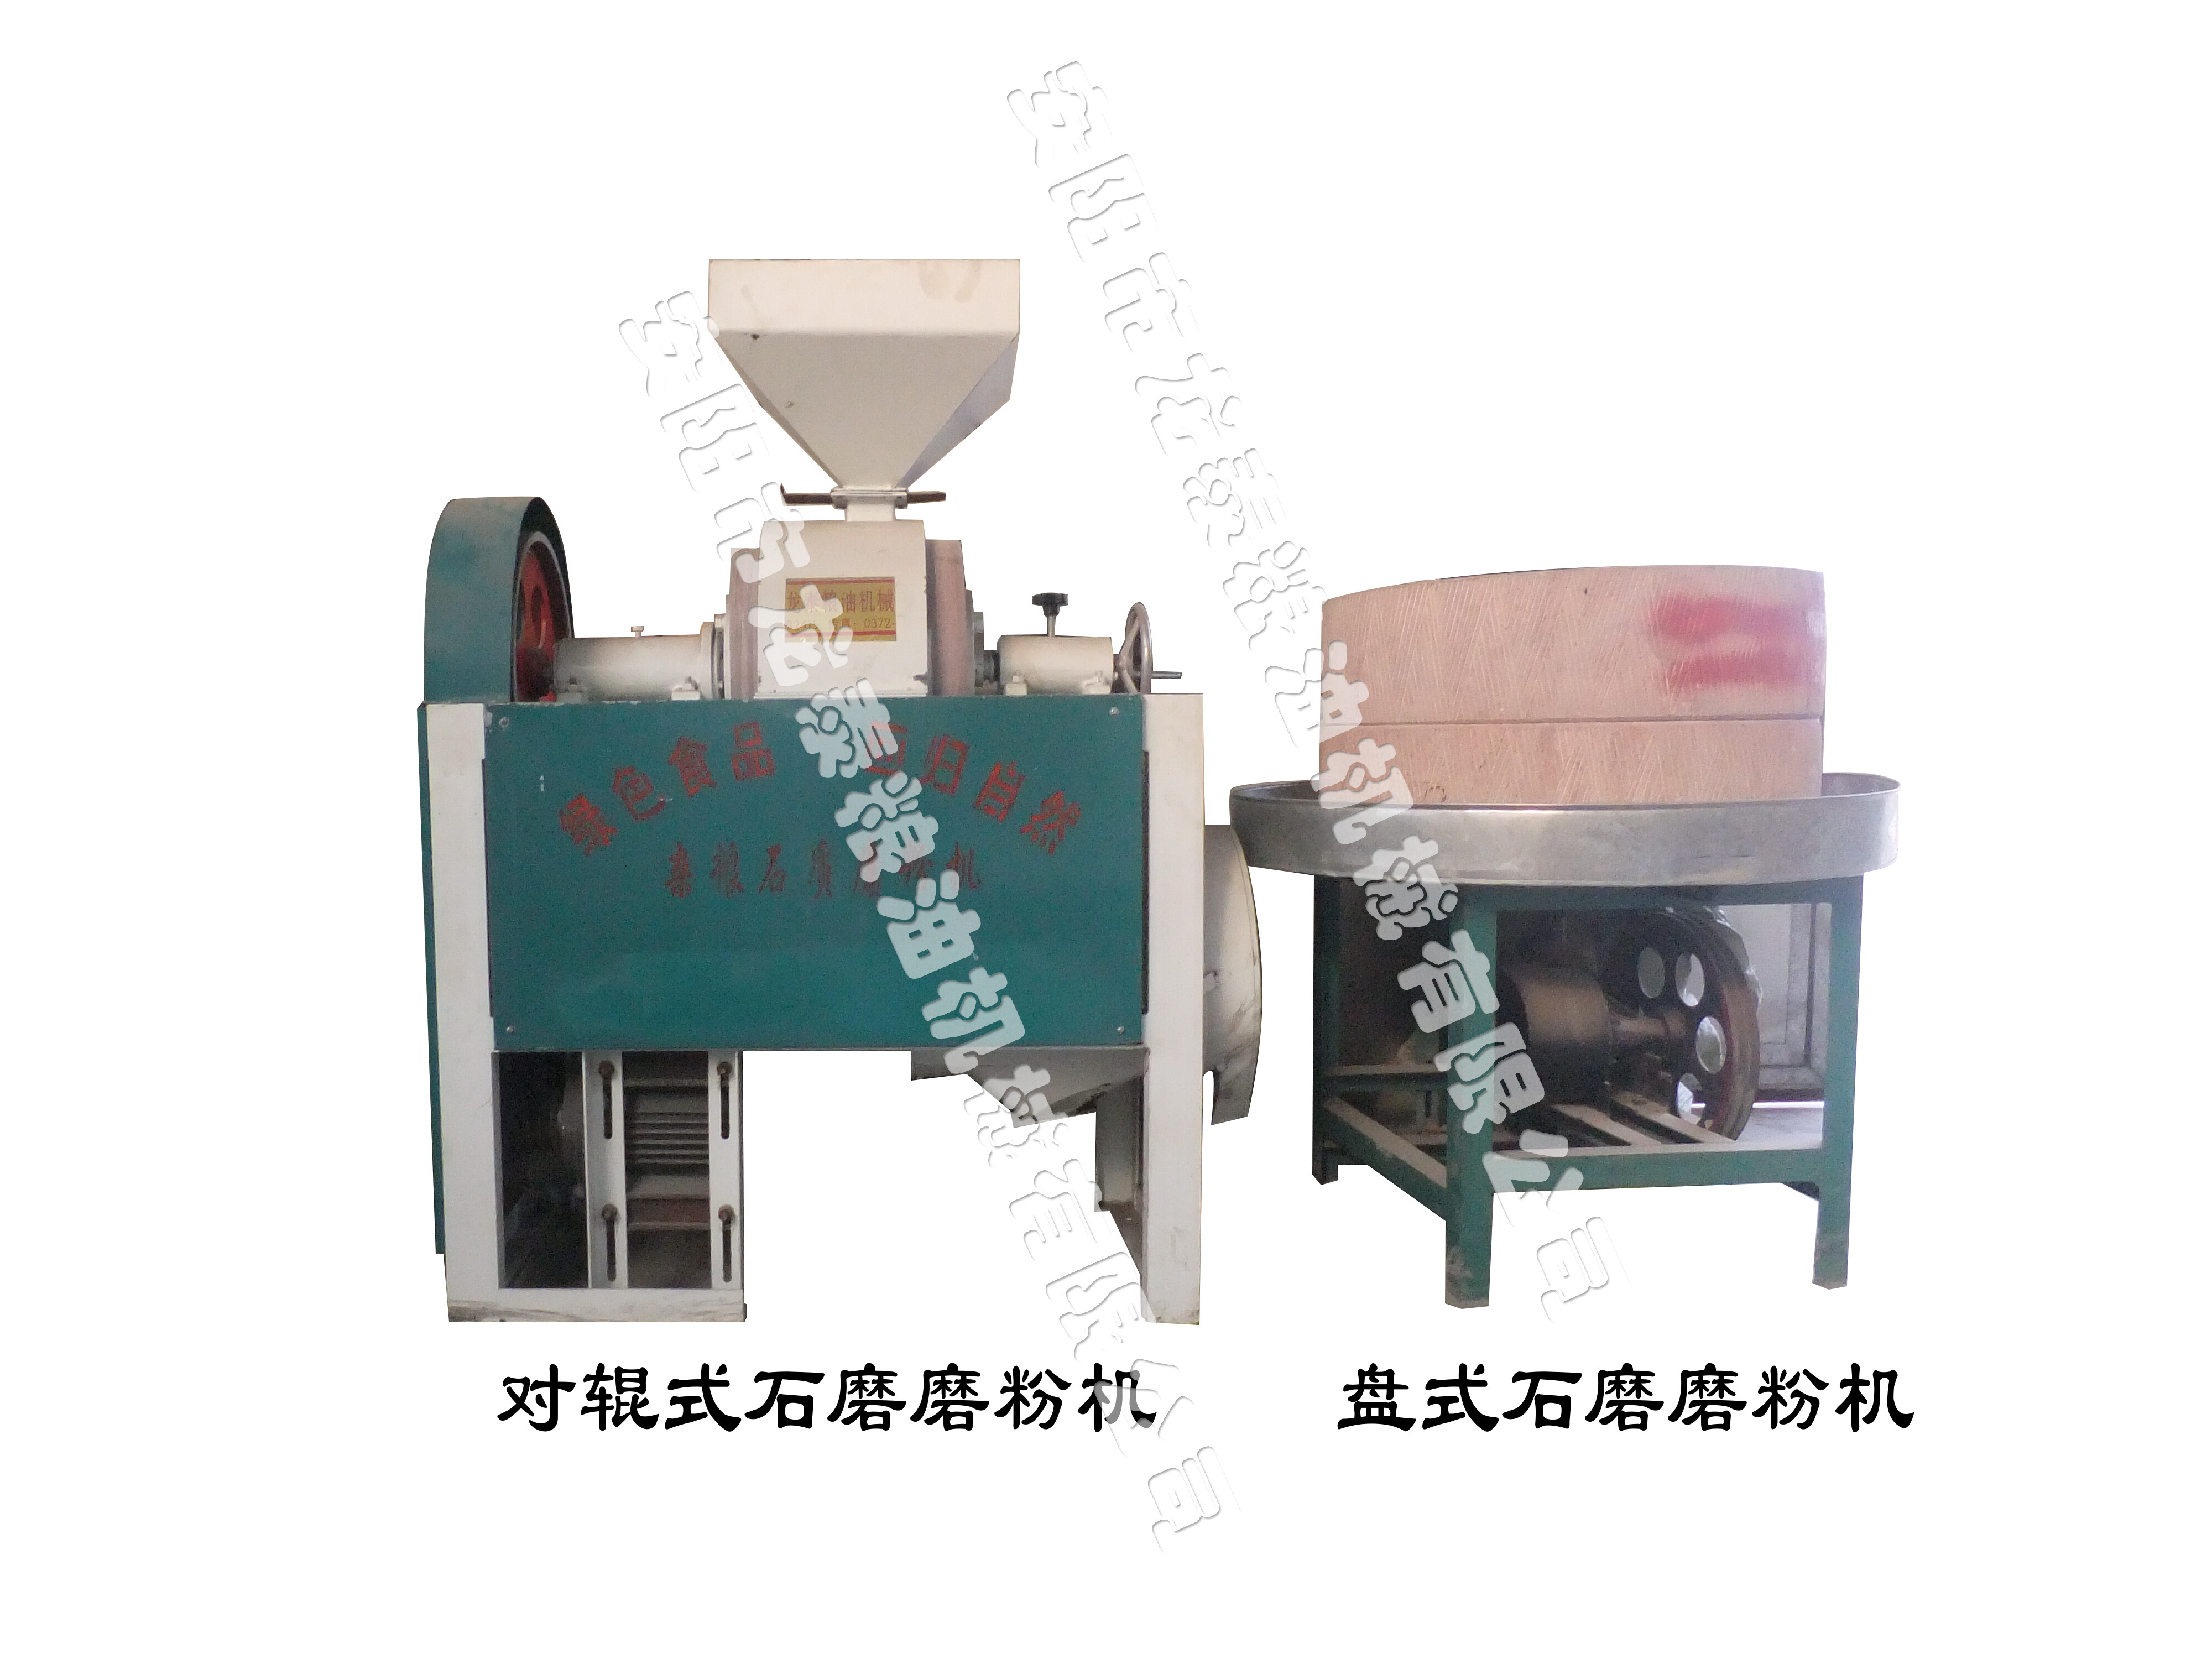 石磨磨粉機-石磨簡介、產品規格 